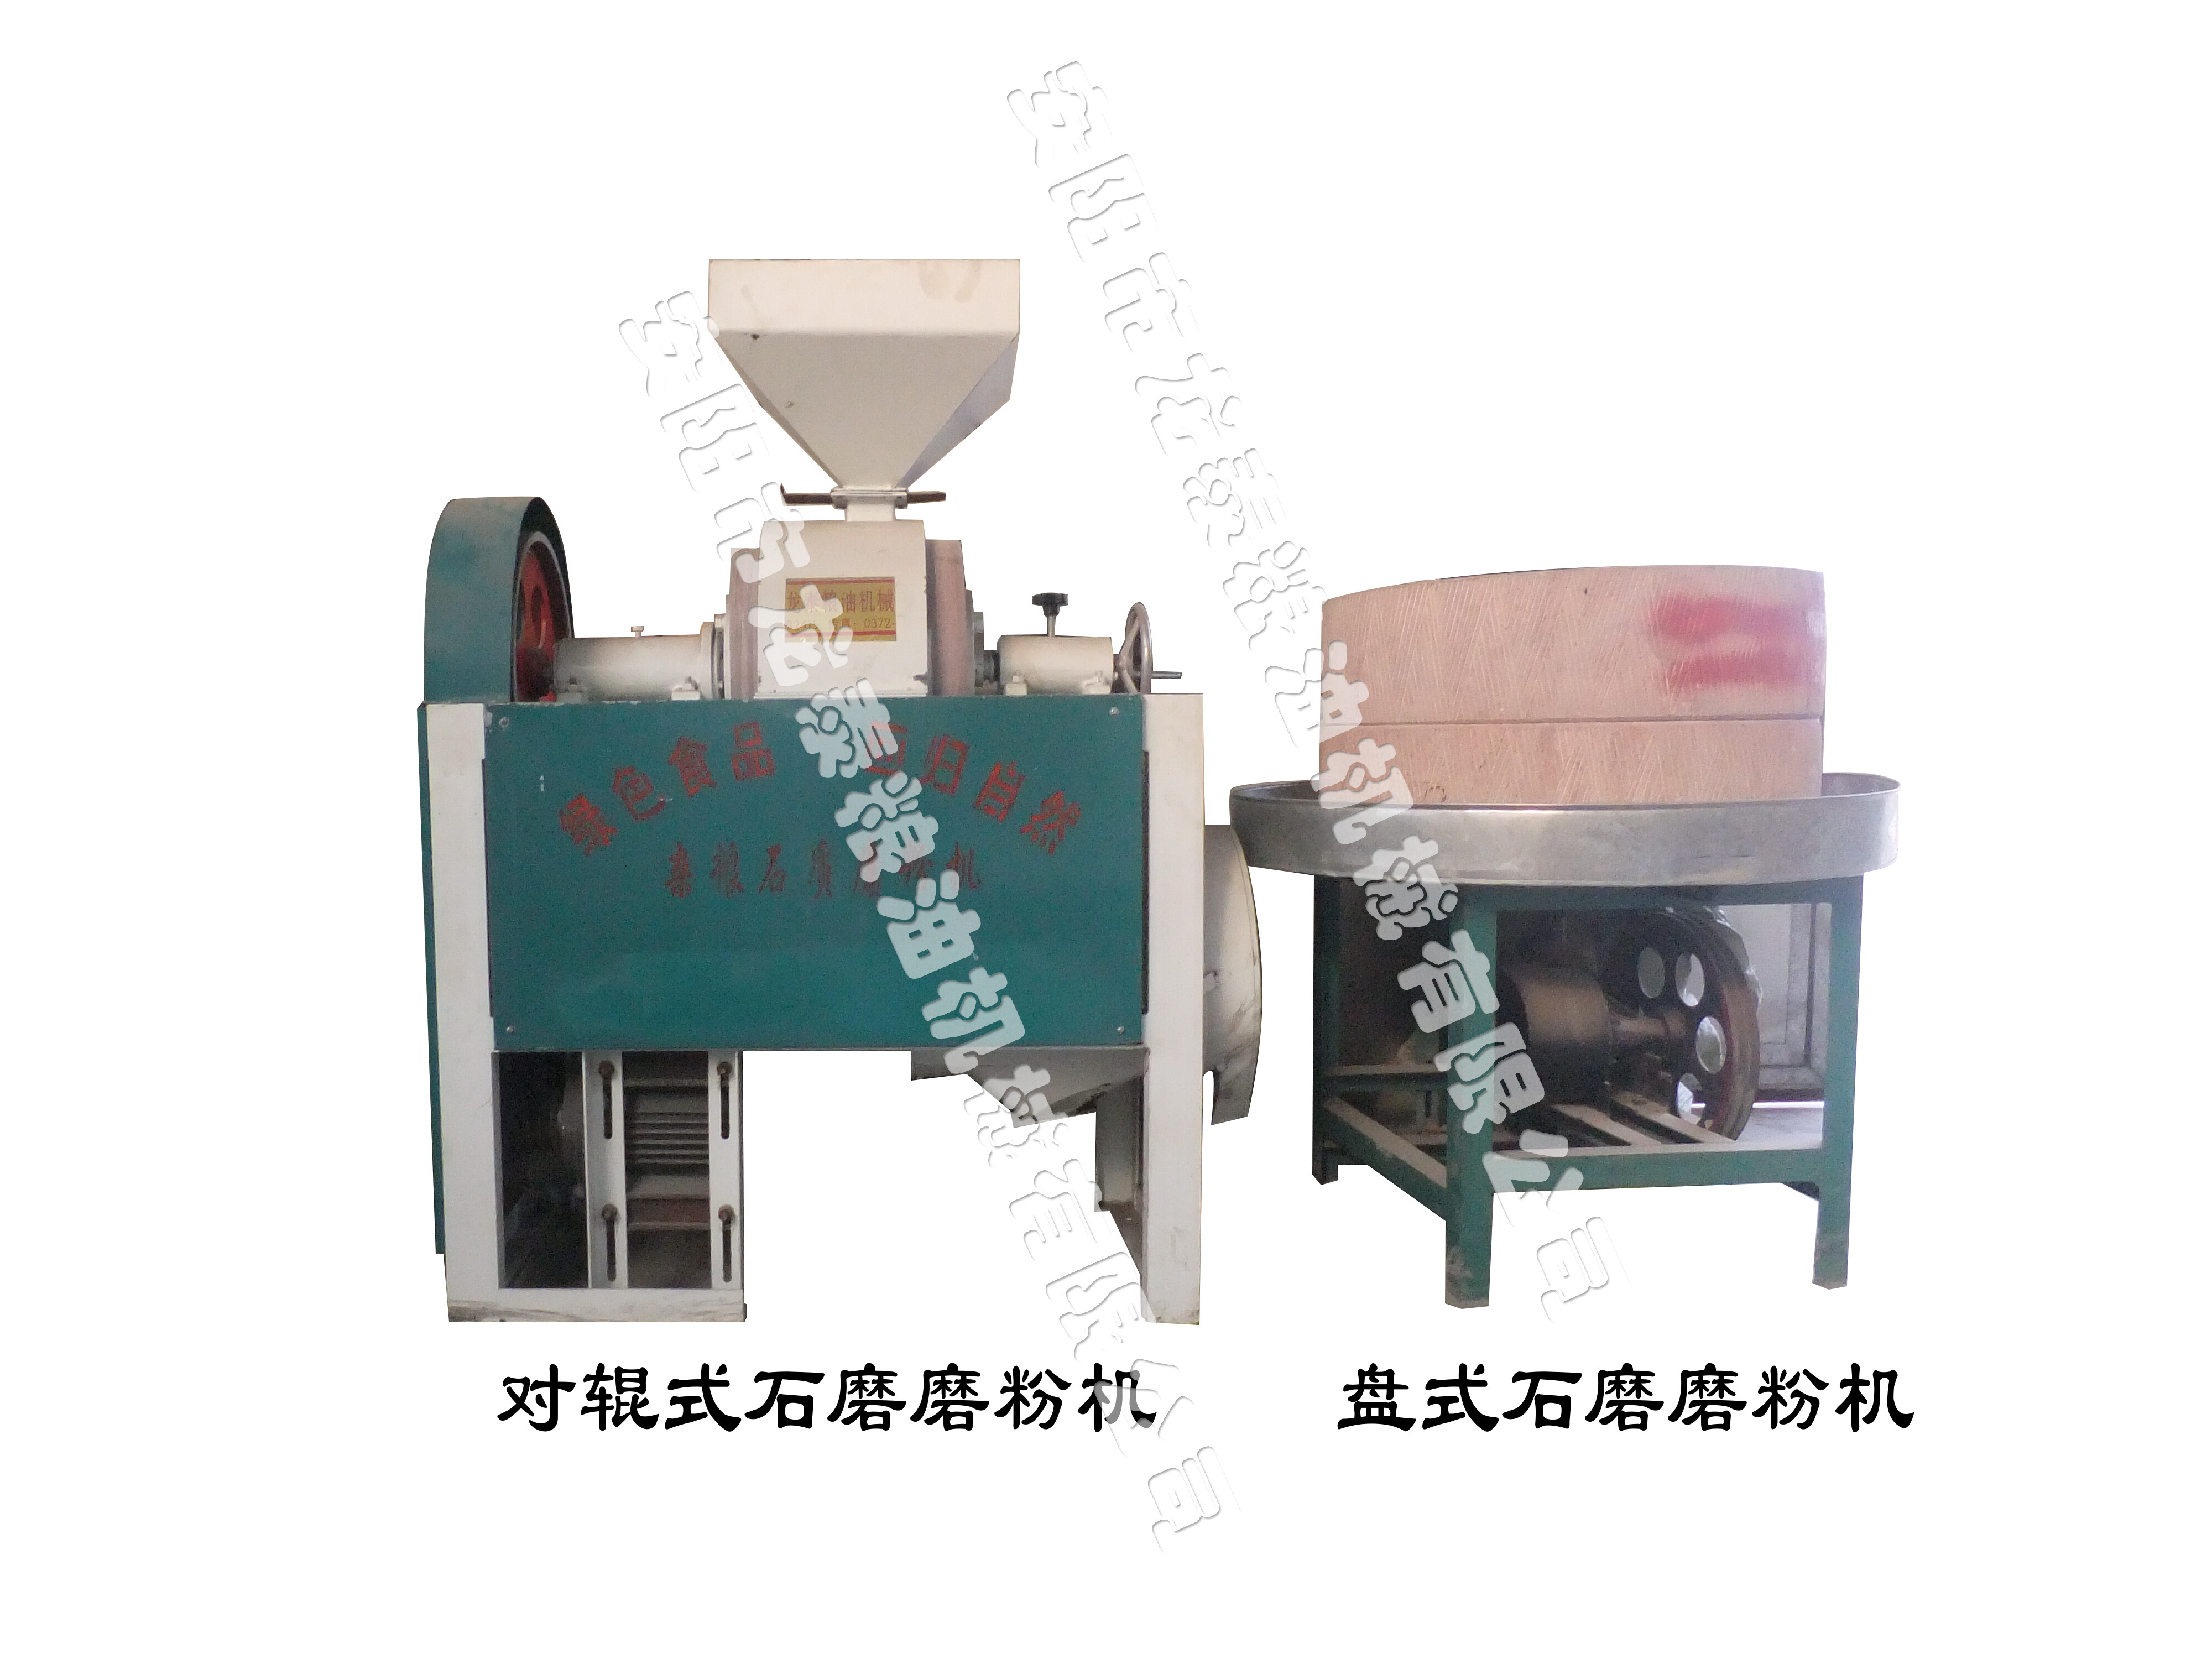 石磨磨粉機-石磨簡介、產品規格 